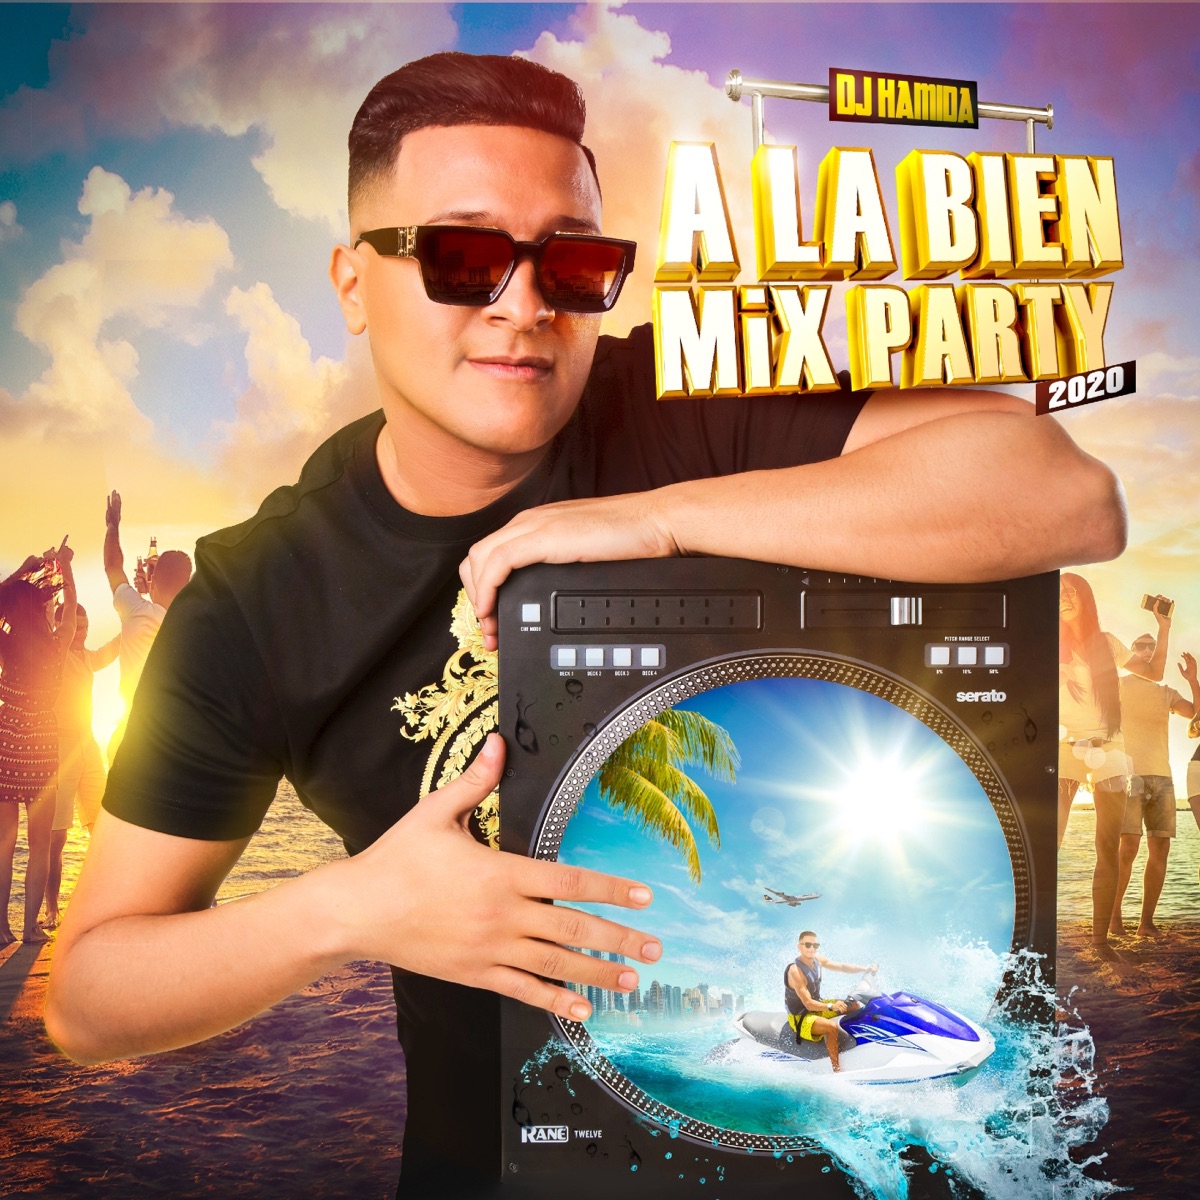 À la bien Mix Party 2014: L'album – Album par DJ Hamida – Apple Music